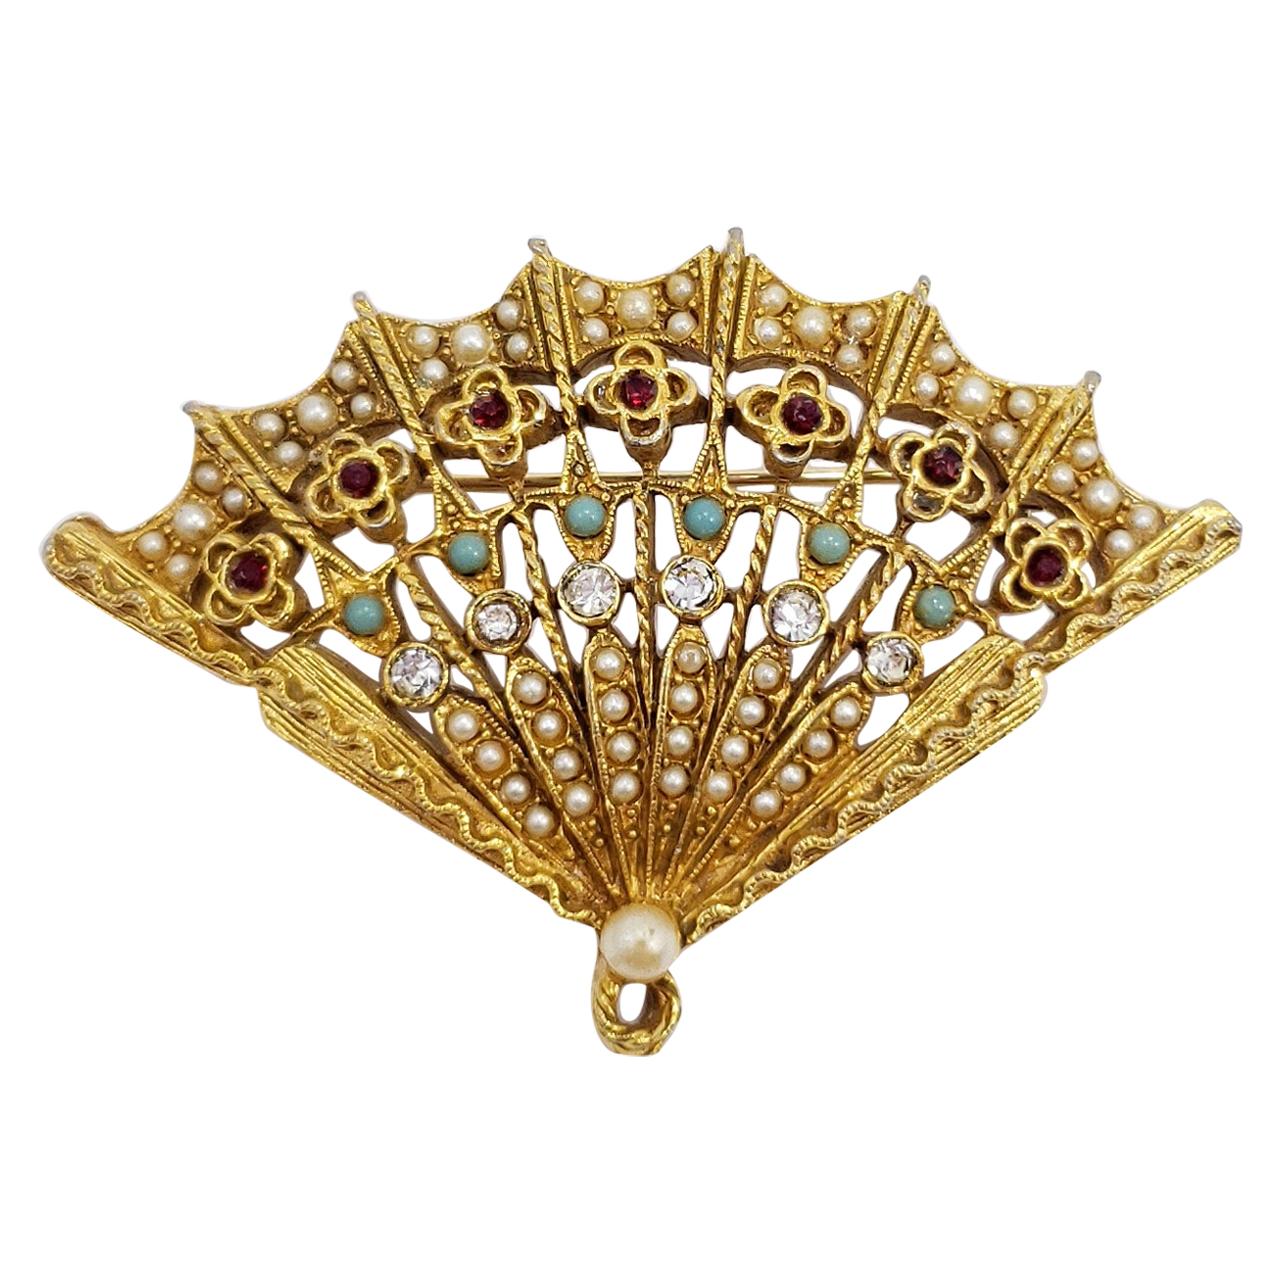 Miniature Chinese Fan Pendant,Fan Pendants,Floral Fan Jewelry,Chinese Fan Gifts,Oriental Fan Brooch,Fan Pin,Fan Jewellery,Fan shape Brooch